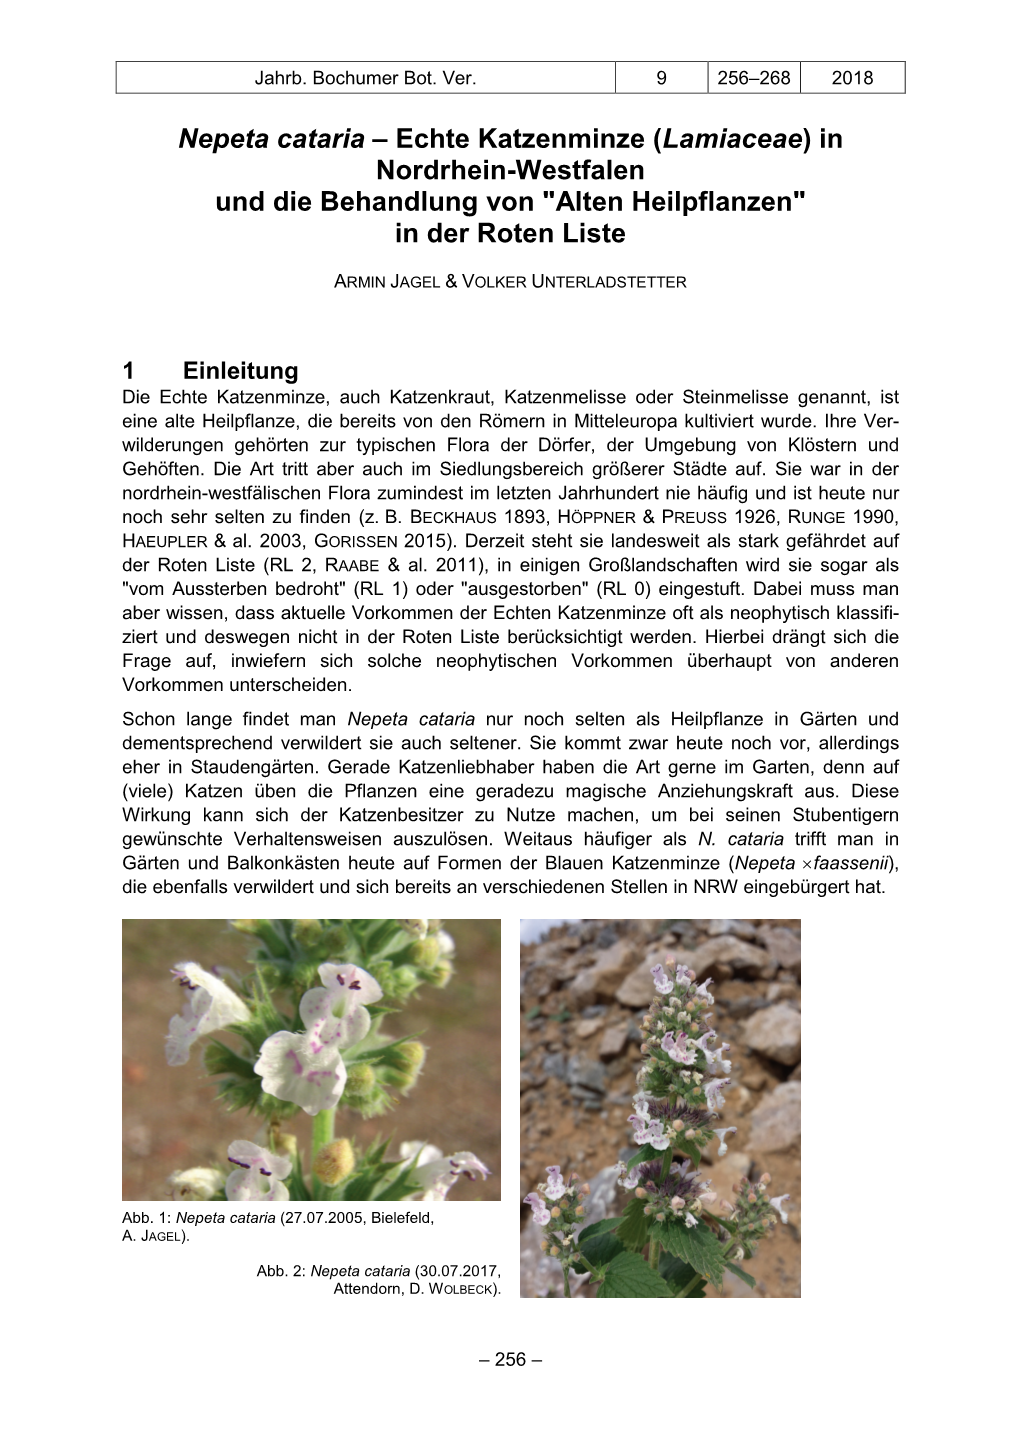 Nepeta Cataria – Echte Katzenminze (Lamiaceae) in Nordrhein-Westfalen Und Die Behandlung Von "Alten Heilpflanzen" in Der Roten Liste